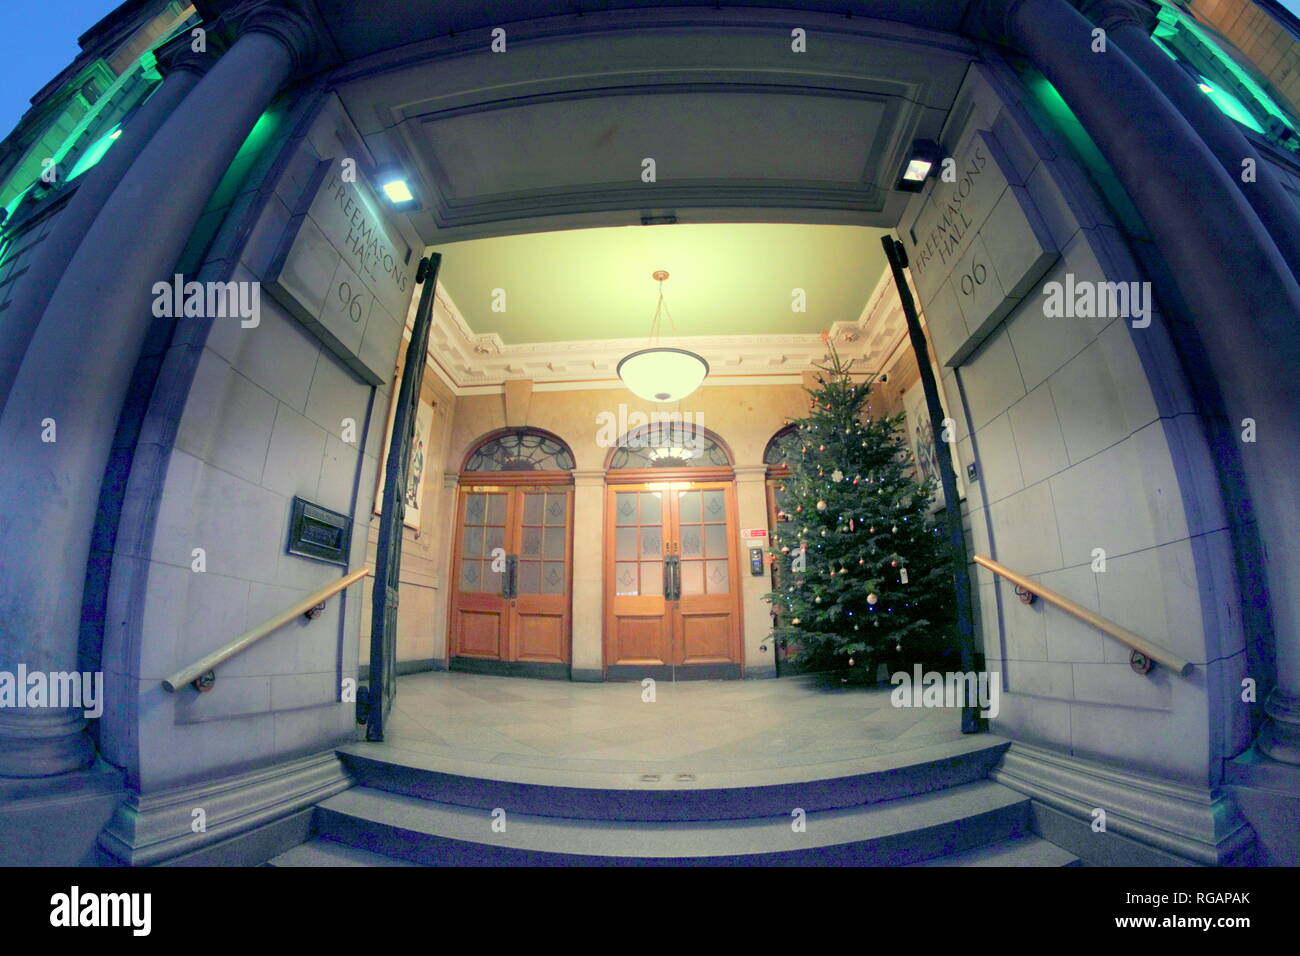 Entrada desde la calle con árbol de Navidad Freemasons Hall 96 George St, Edinburgh EH2 3DH Foto de stock